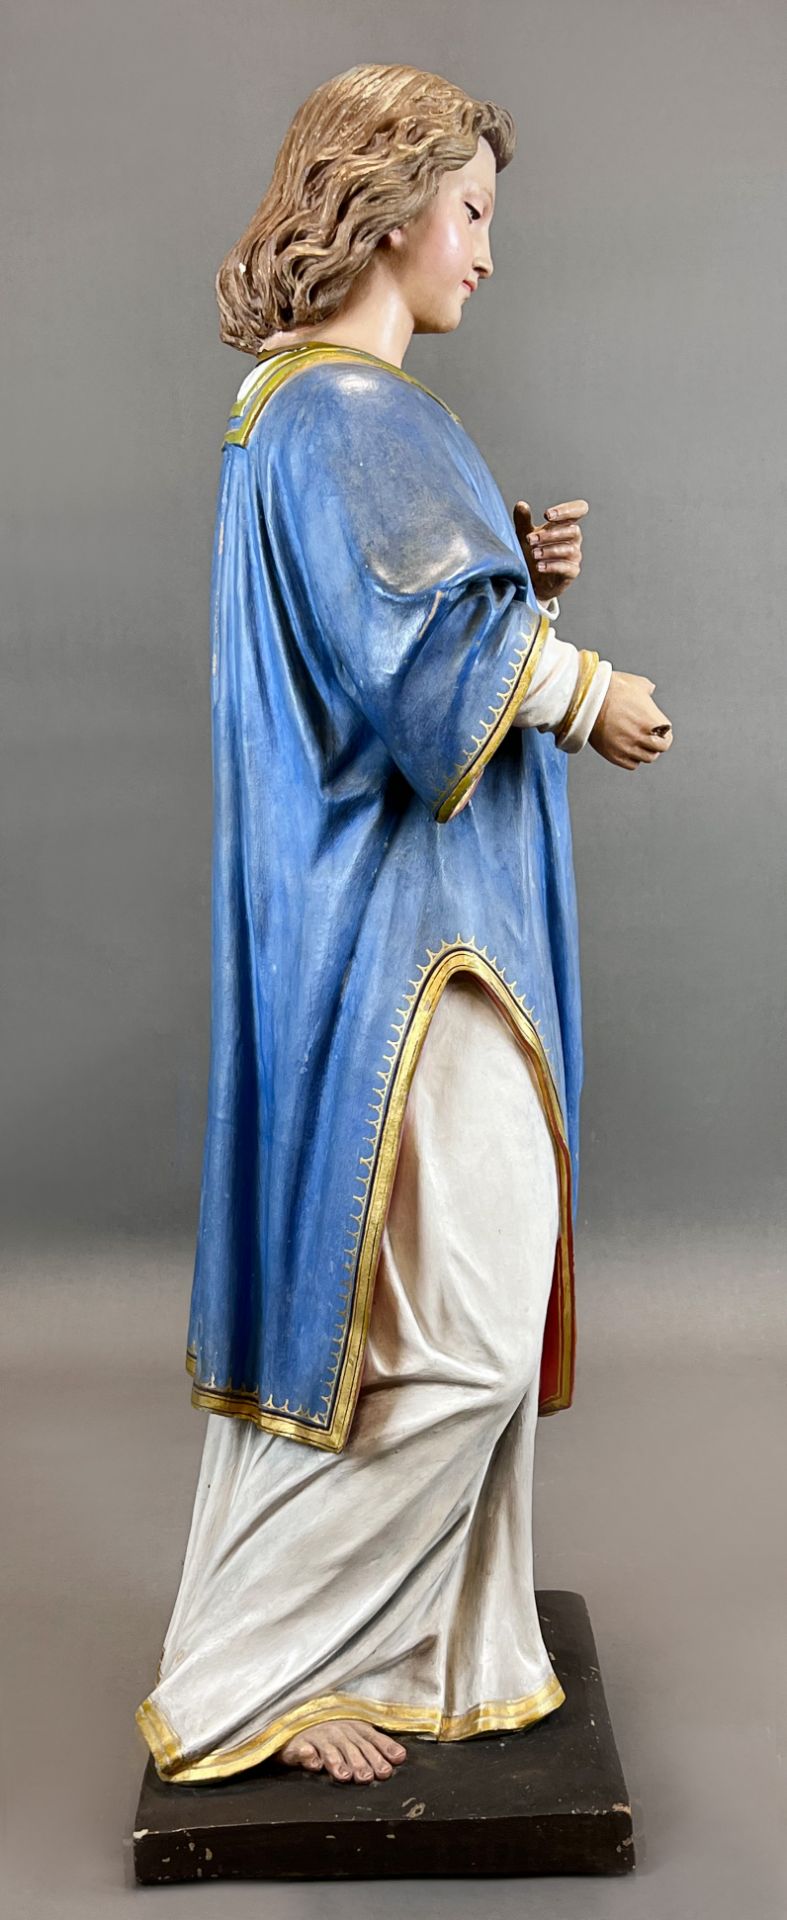 Heiligenfigur. Nazarener. Um 1900. Wohl Italien. - Bild 7 aus 14